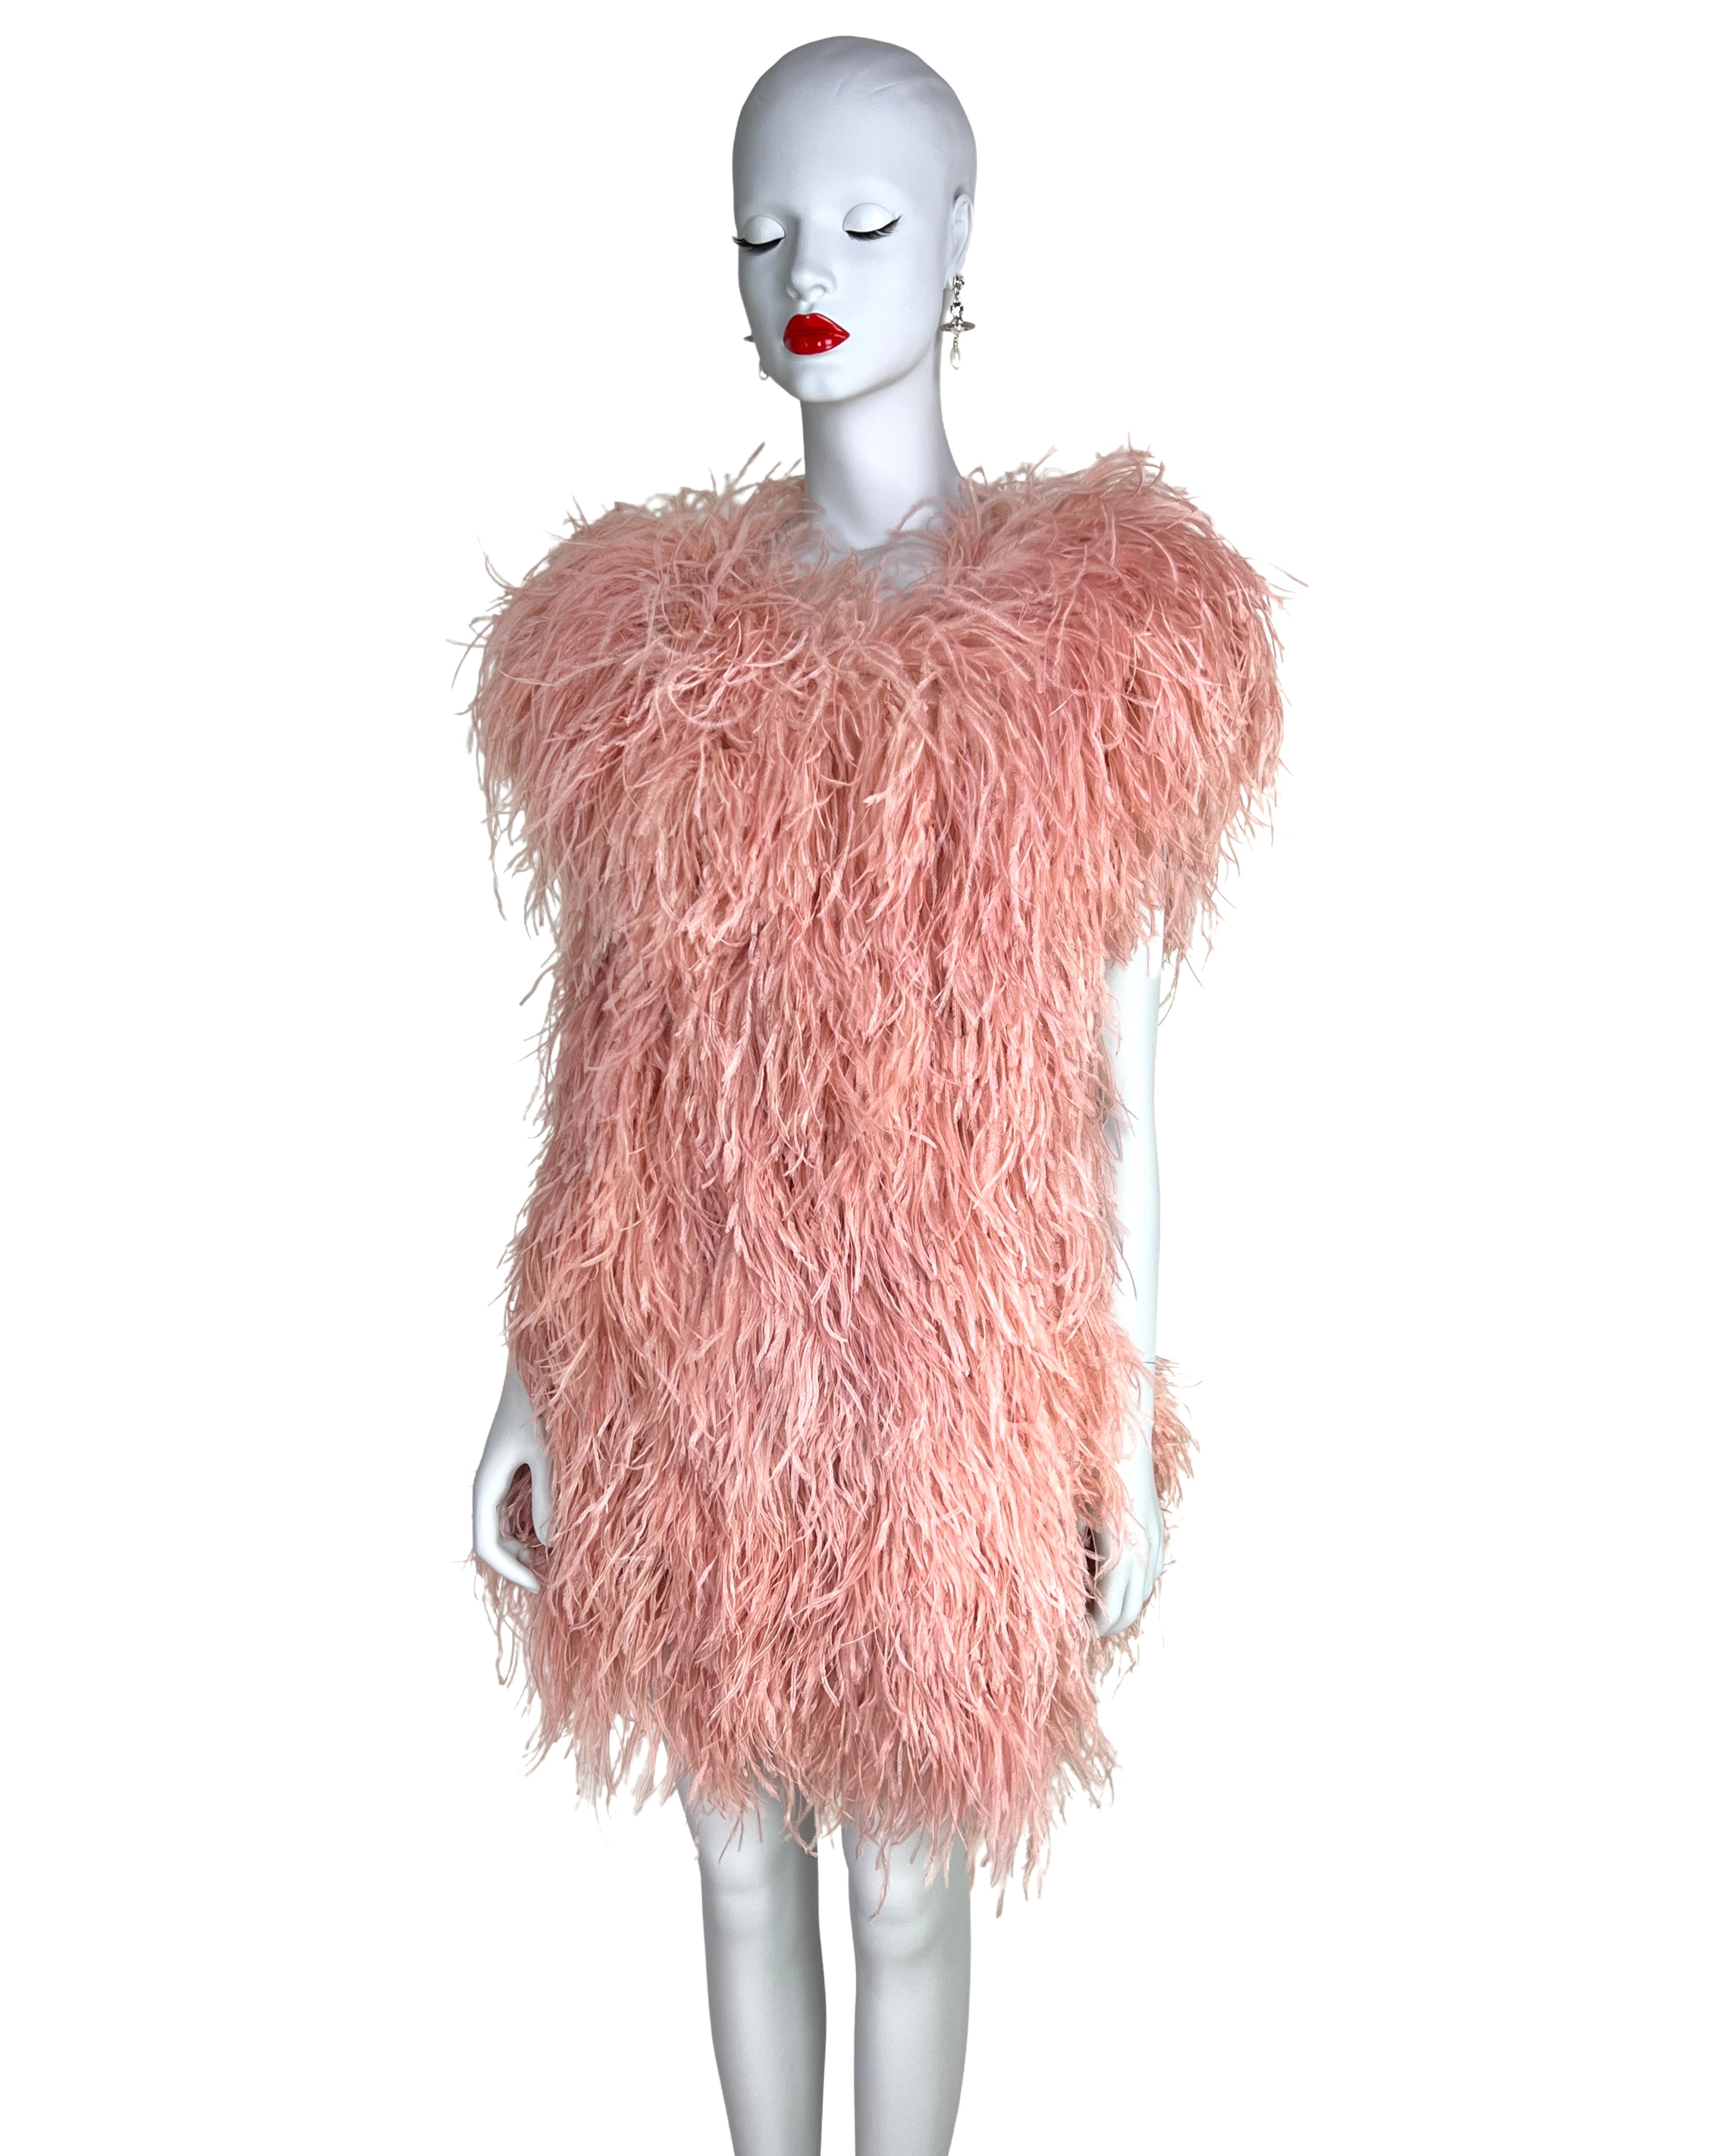 Sonia Rykiel Fall 2010 Ostrich Feather Dress